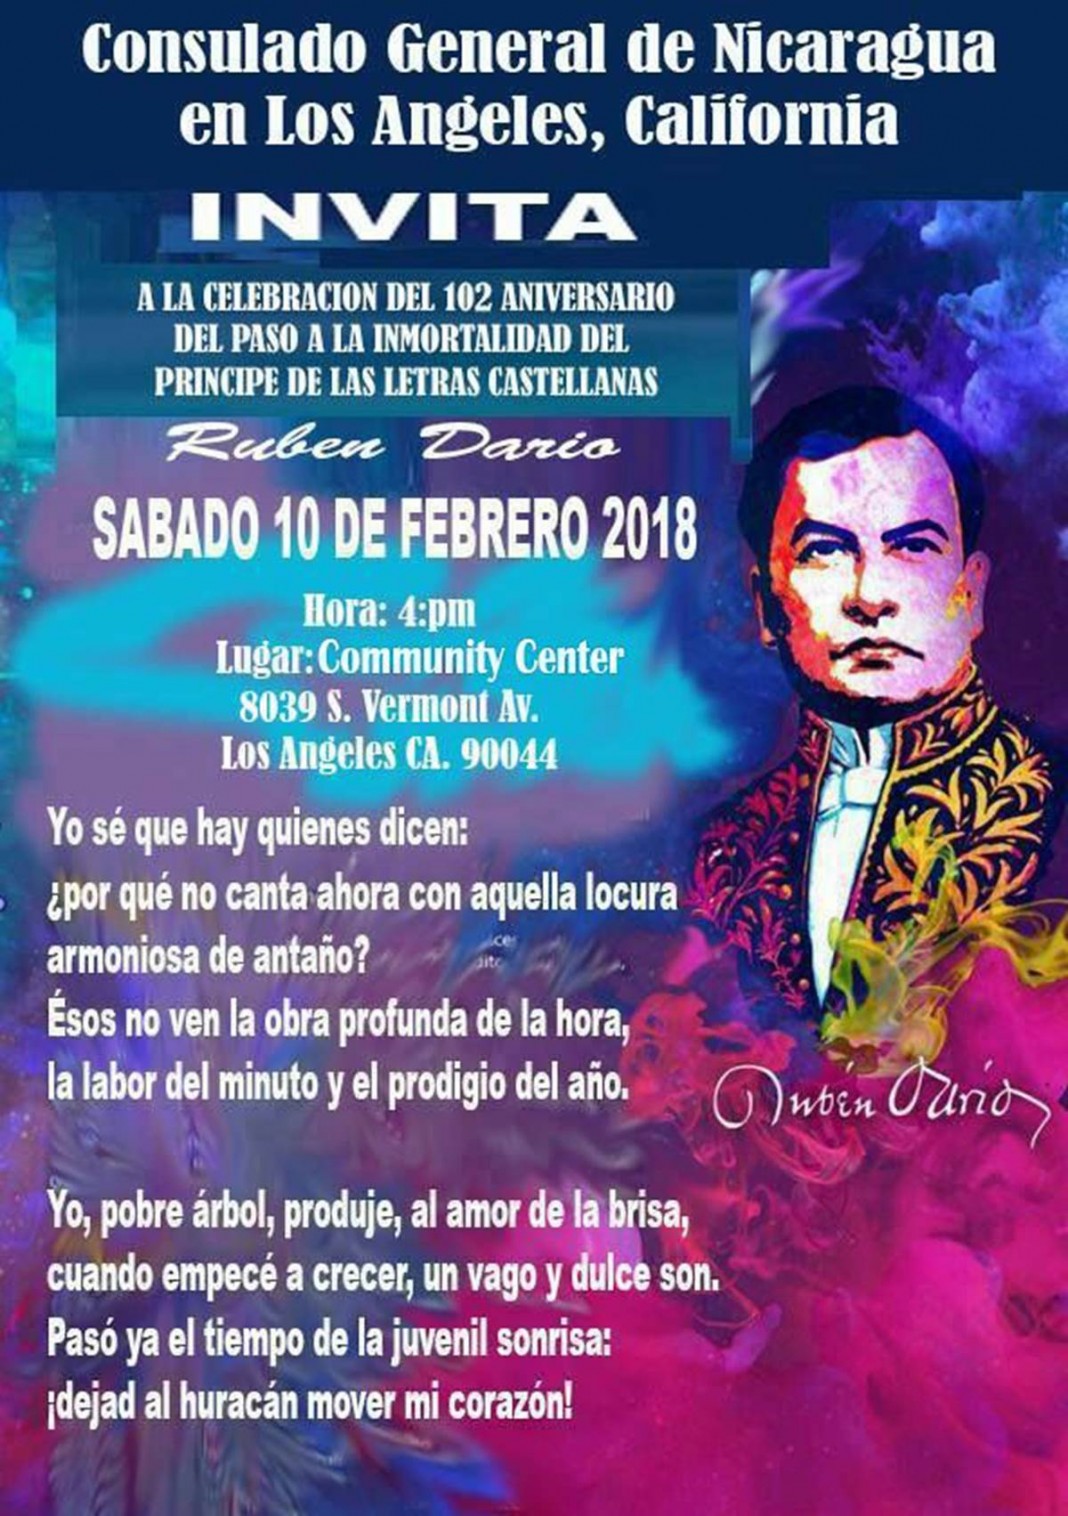 CONSULADO GENERAL DE NICARAGUA EN LOS ANGELES - INVITA